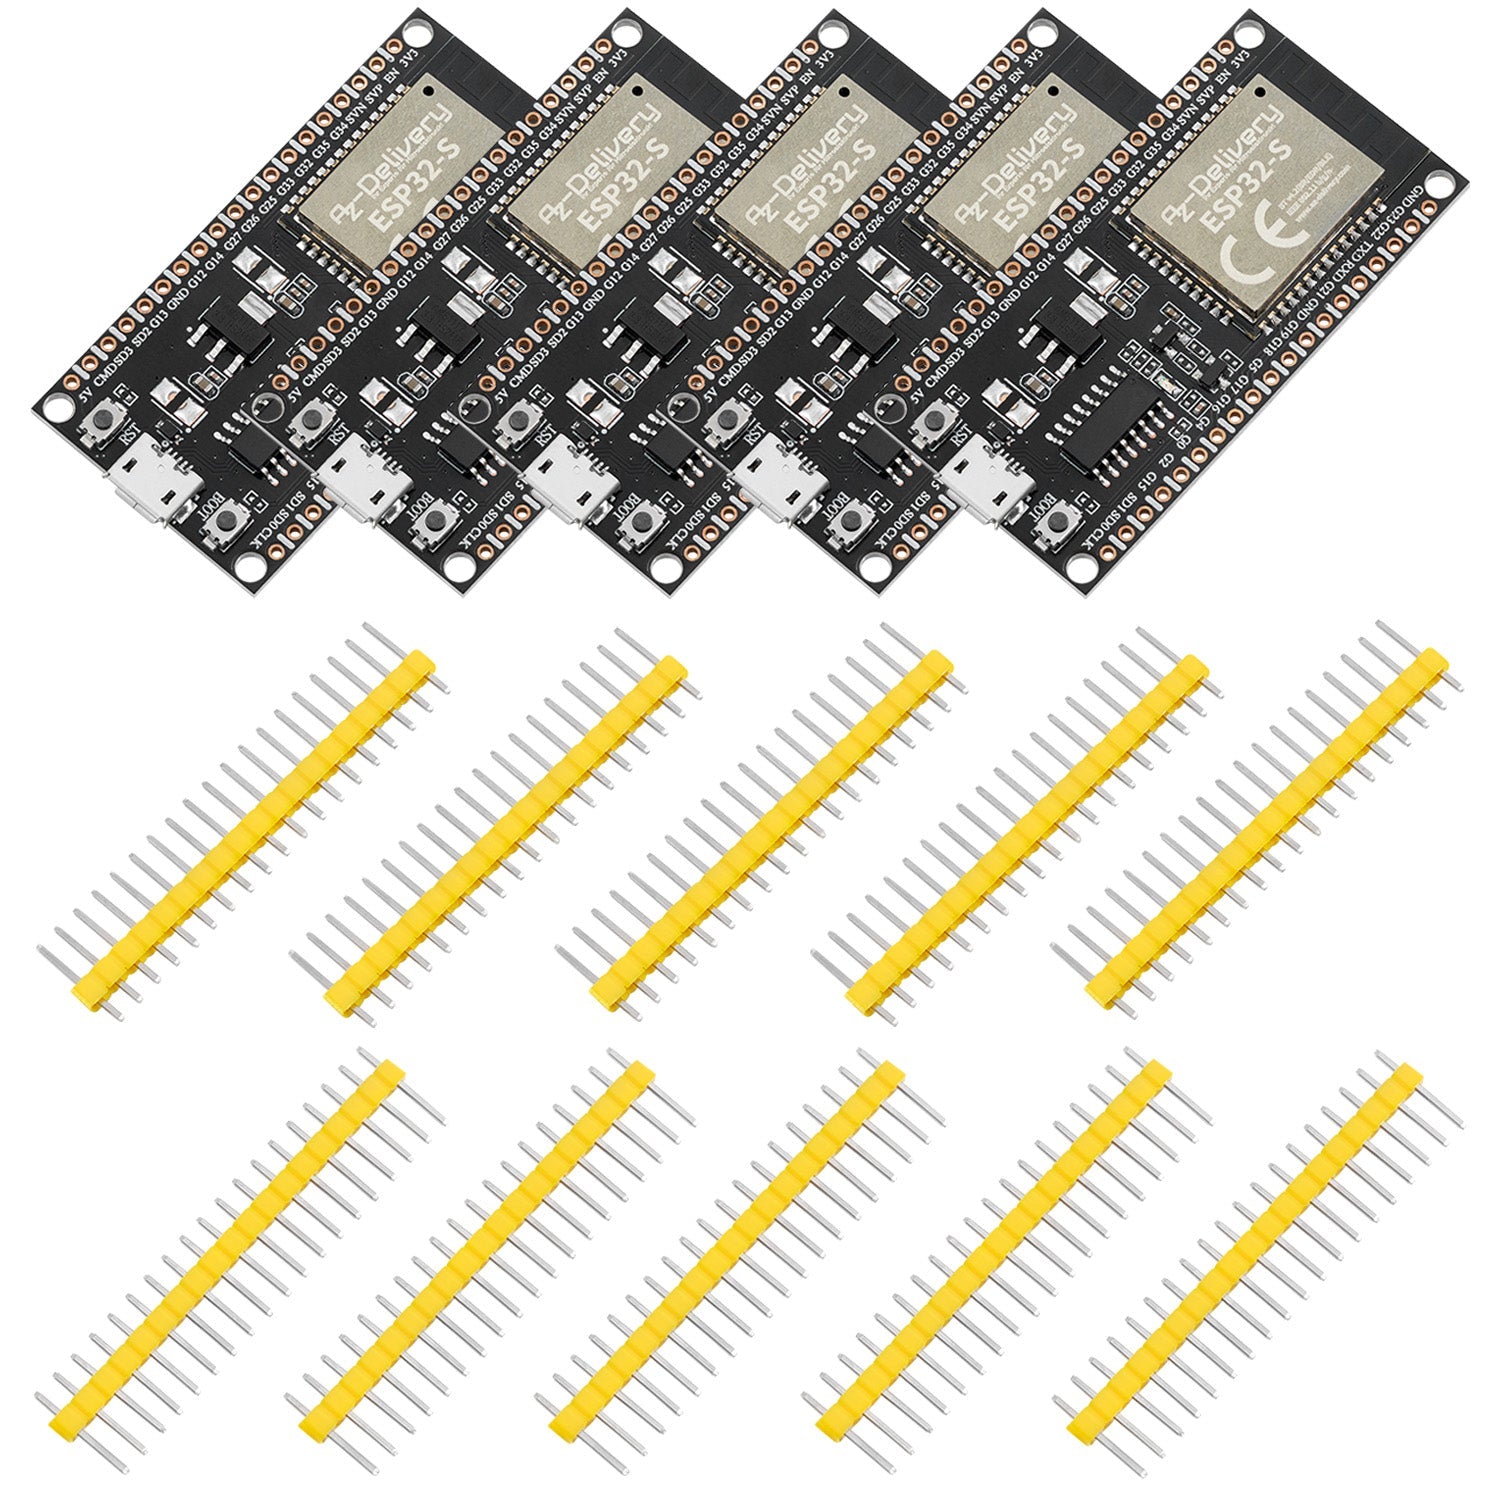 ESP32S Dev Kit C unverlötet NodeMCU Module WLAN WiFi Development Board mit CH340 und kompatibel mit Arduino - AZ-Delivery